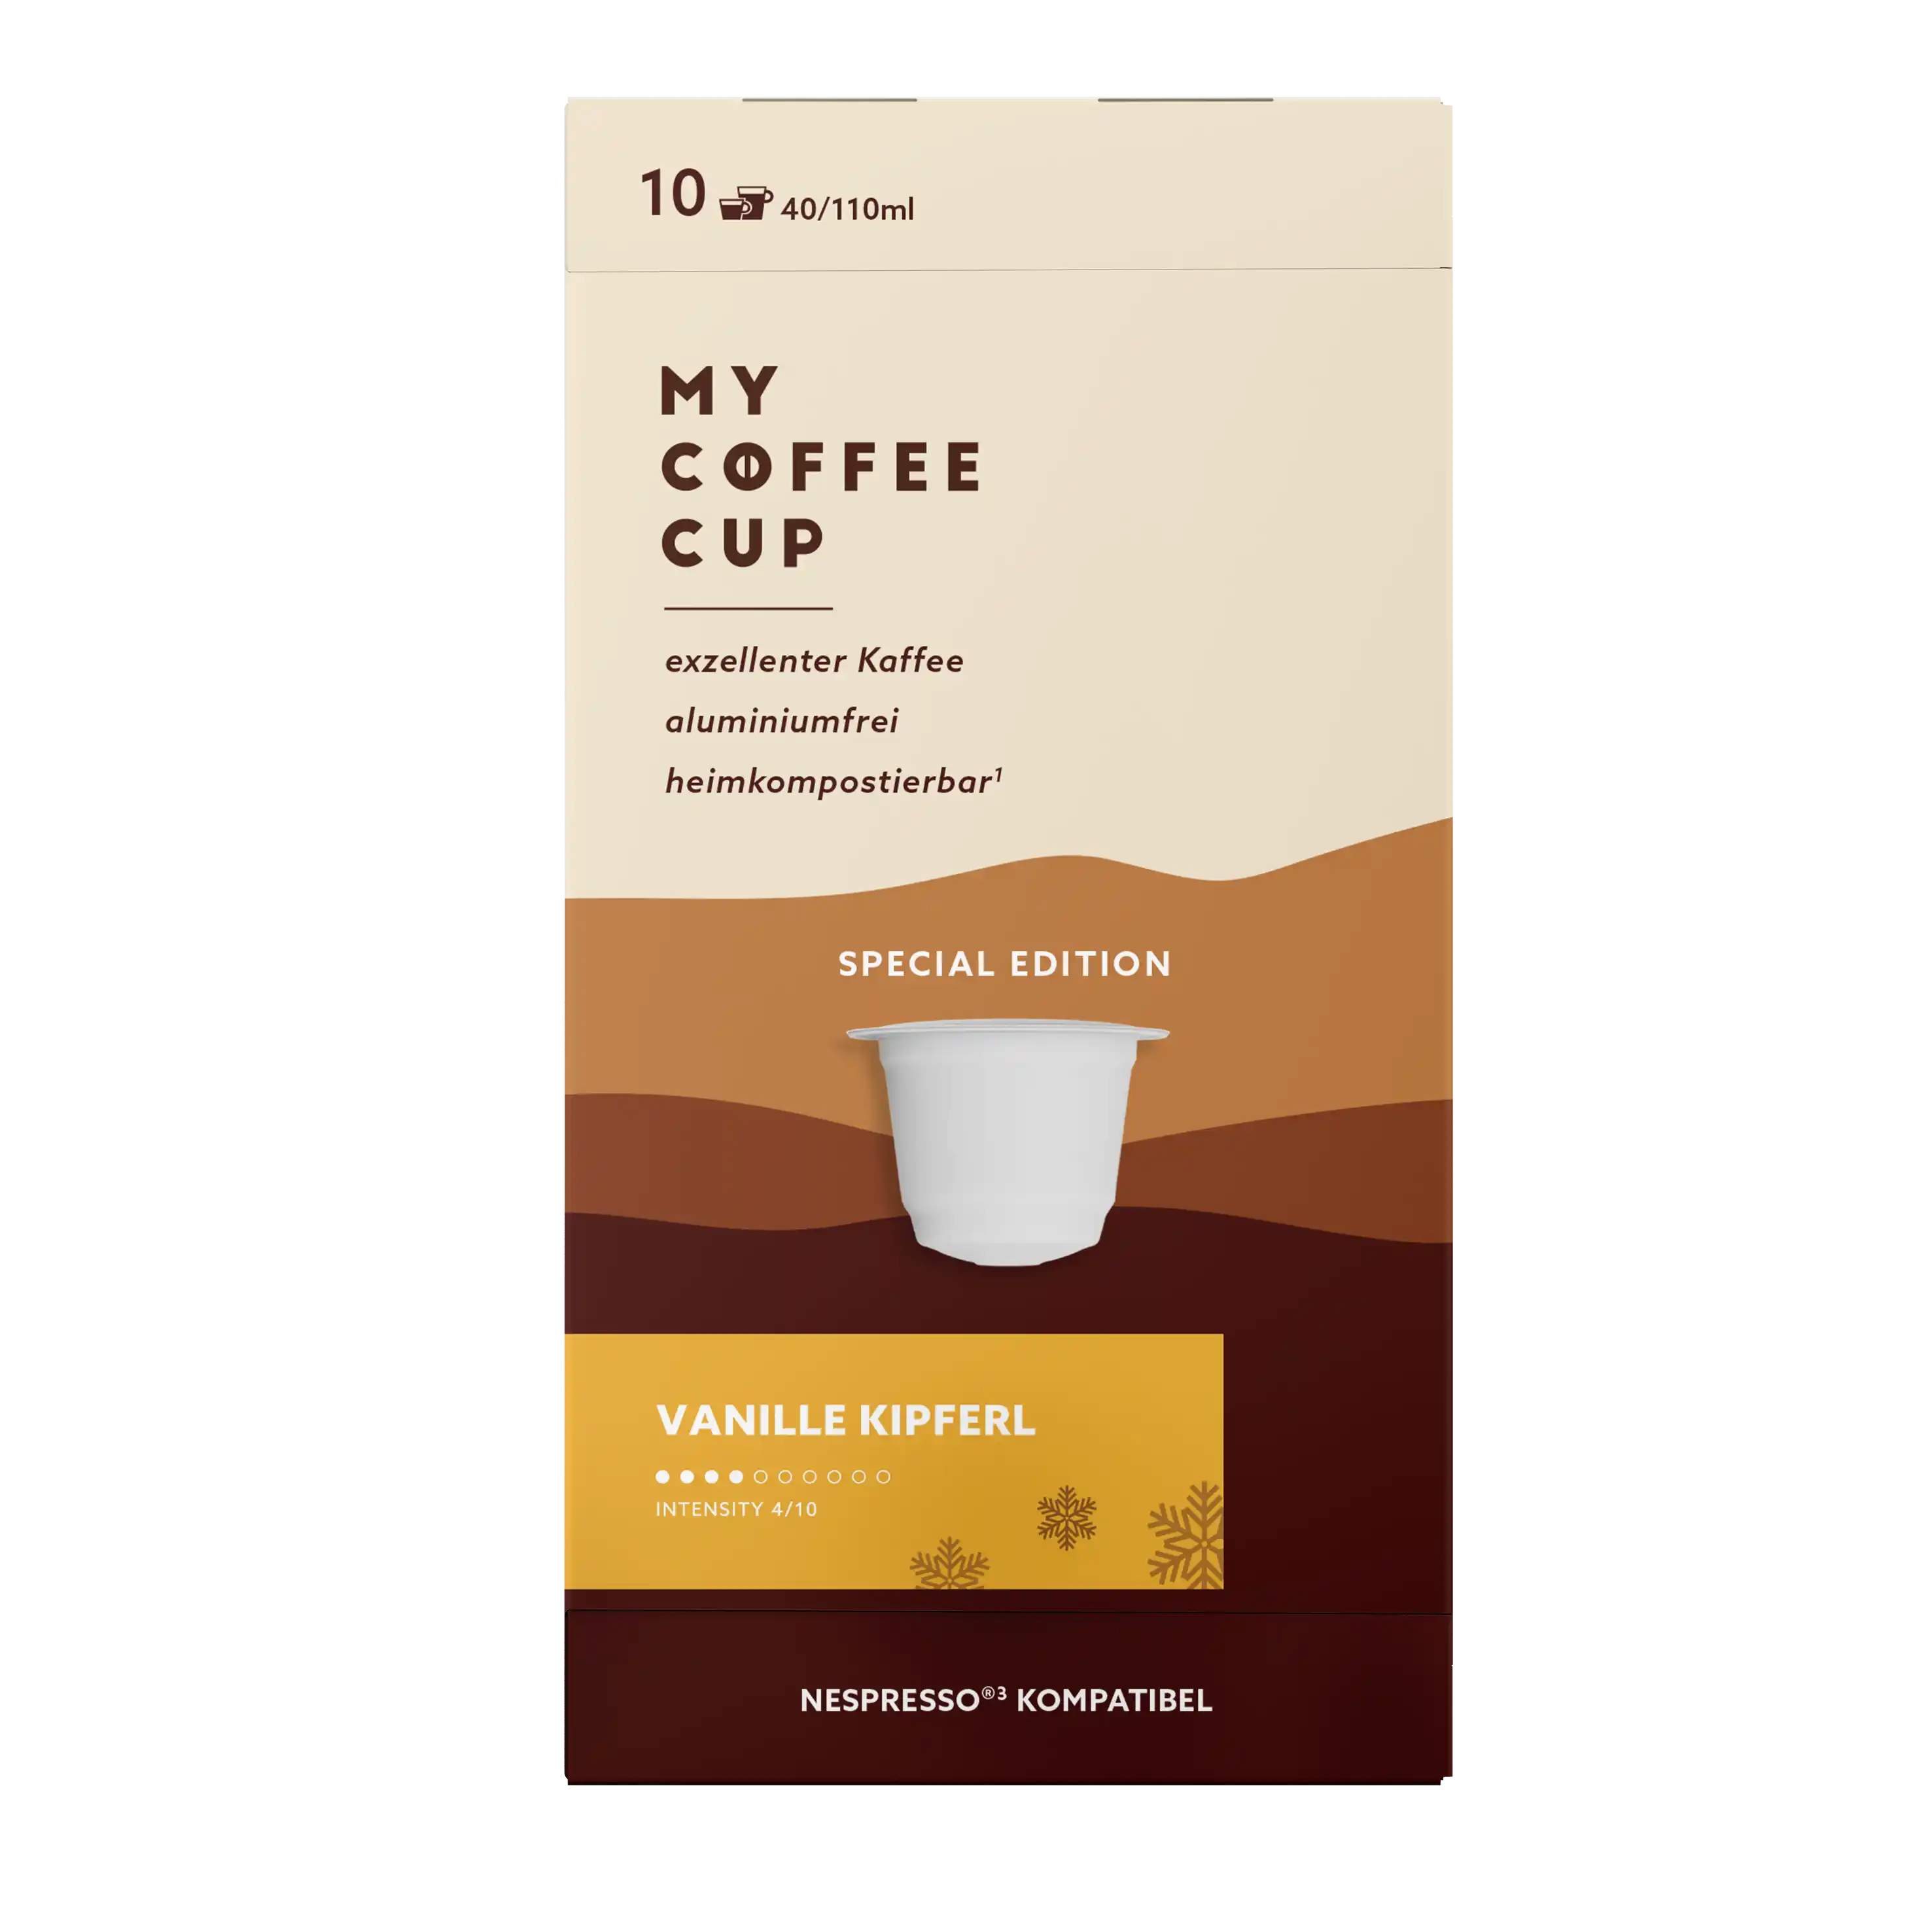 Nespresso kompatible Kapseln - Vanille Kipferl kaffee 10 - MyCoffeeCup.de